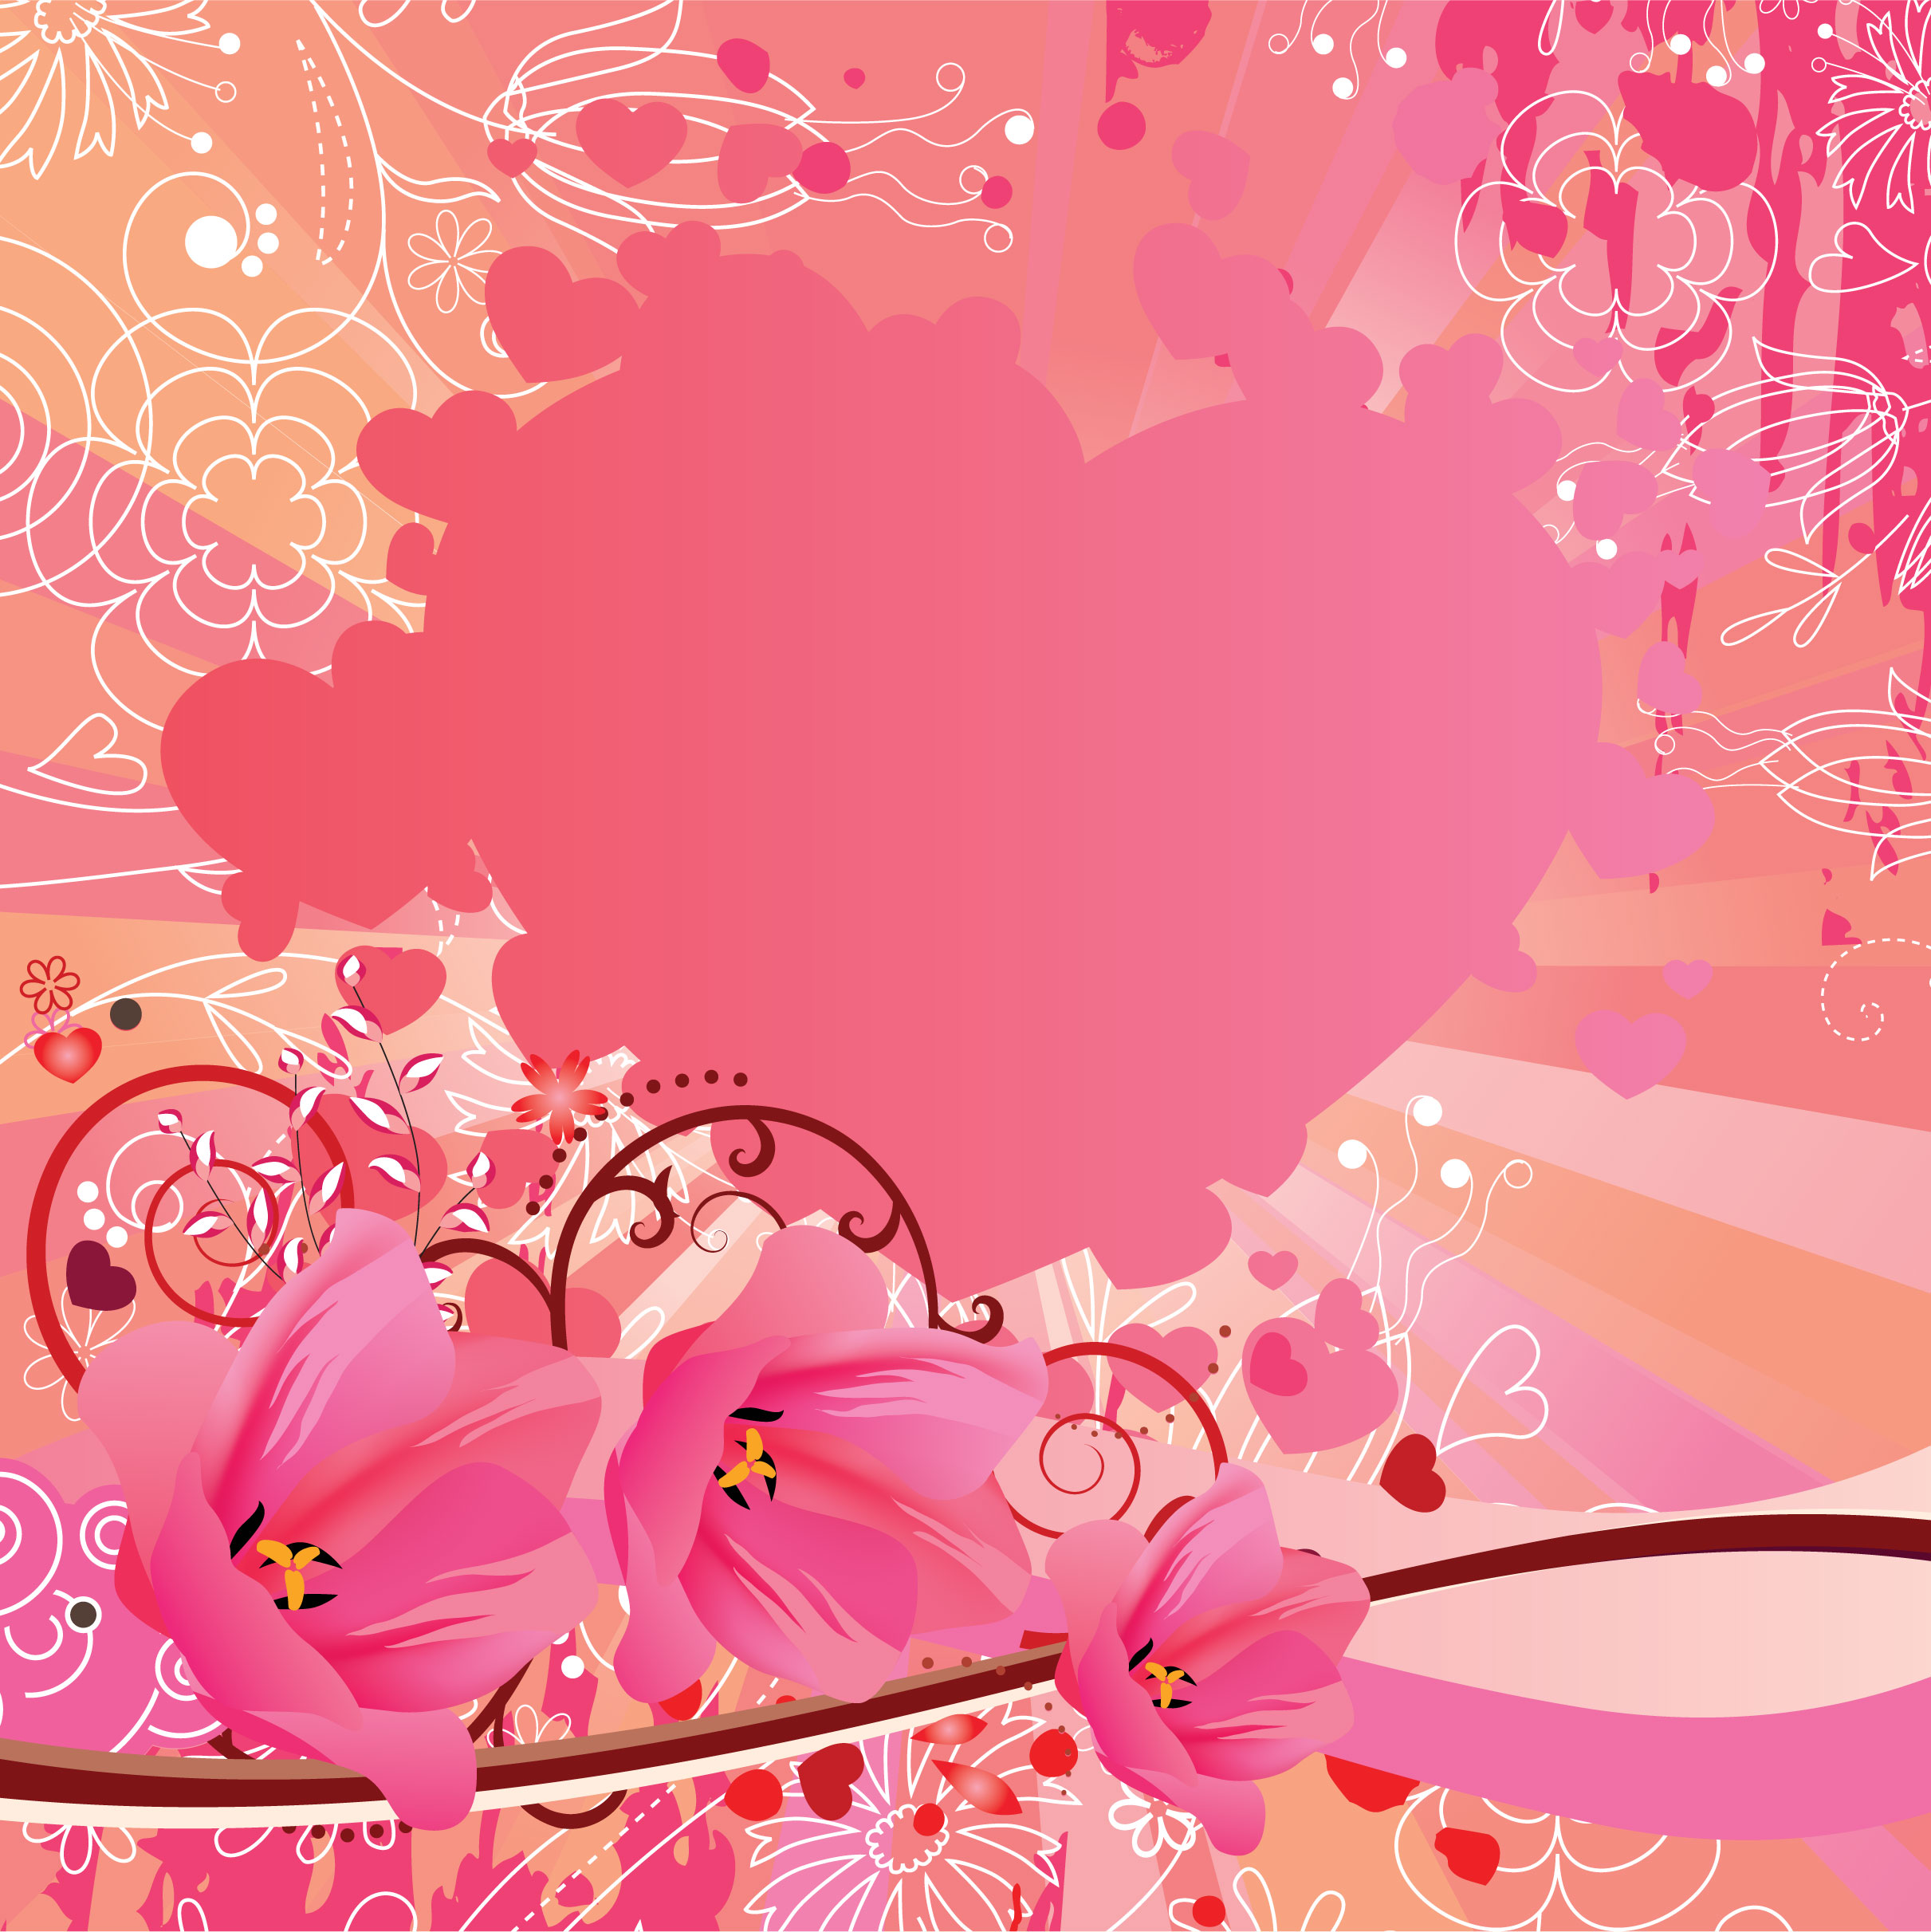 花のイラスト フリー素材 壁紙 背景no 623 ピンク ハート ポップ